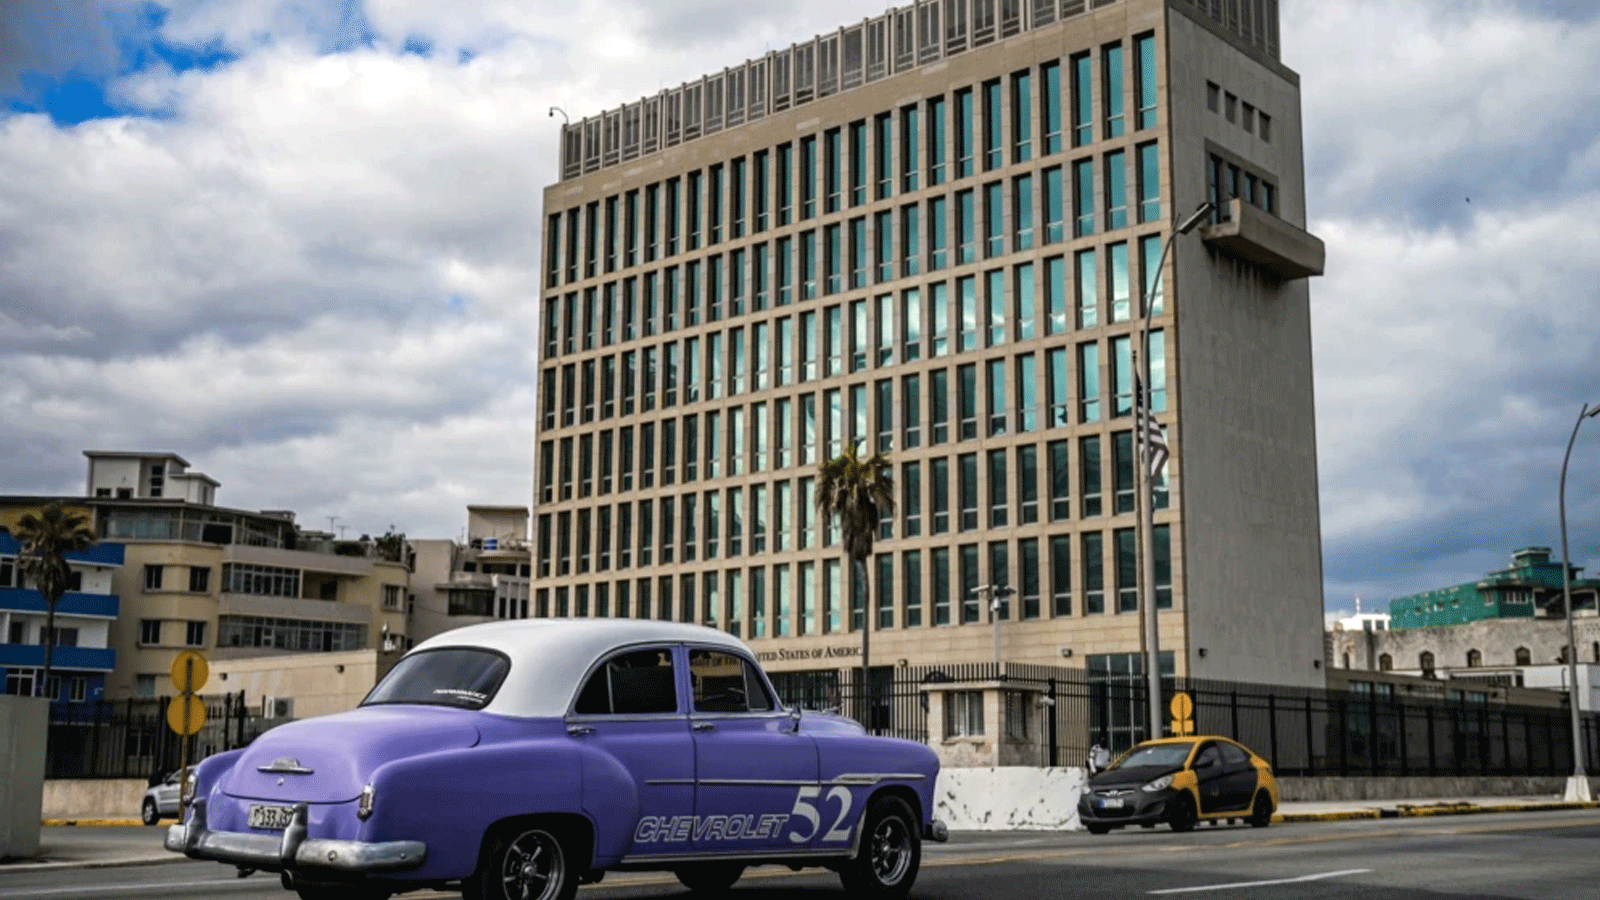 سيارة أميركية قديمة تمرّ أمام السفارة الأميركية في هافانا، كوبا في 3 أيار\ مايو 2022، حيث استأنفت القنصلية إصدار بعض خدمات تأشيرات الهجرة التي تم تعليقها منذ عام 2017